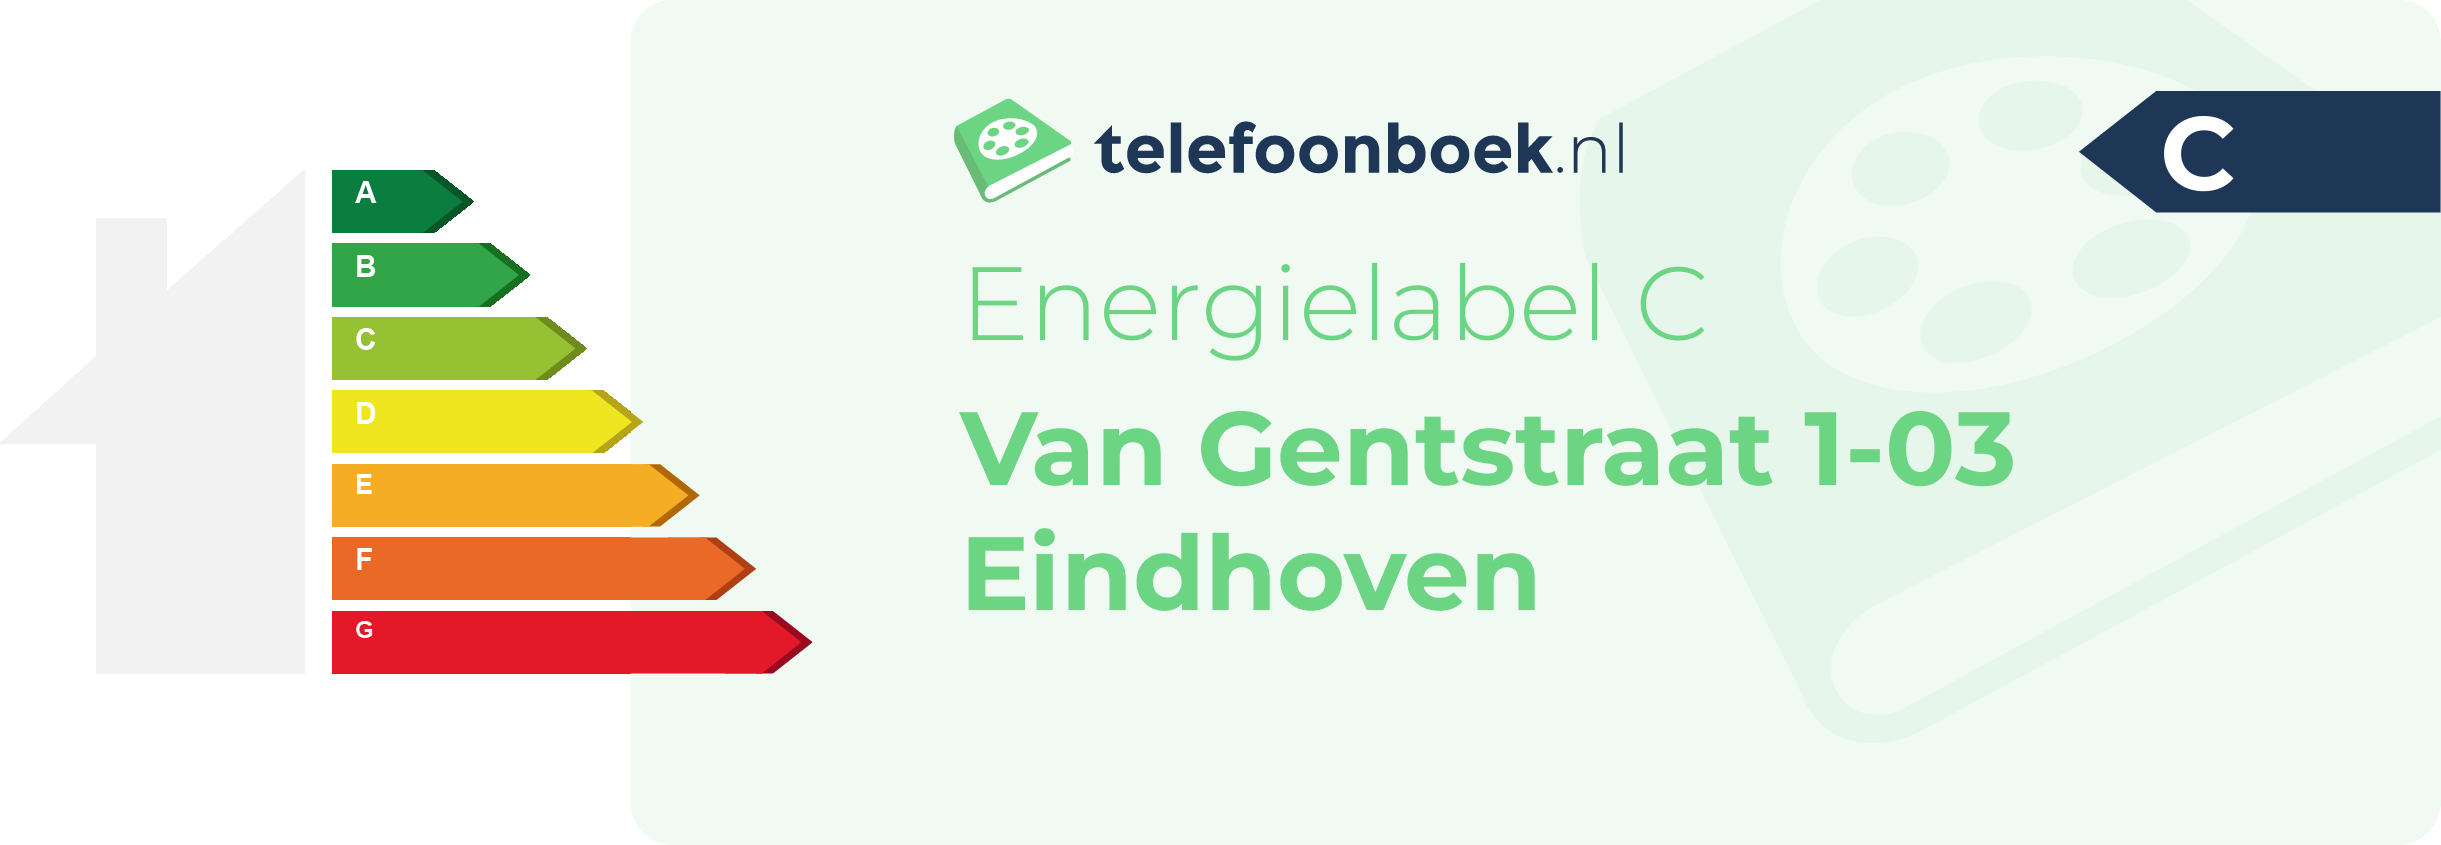 Energielabel Van Gentstraat 1-03 Eindhoven